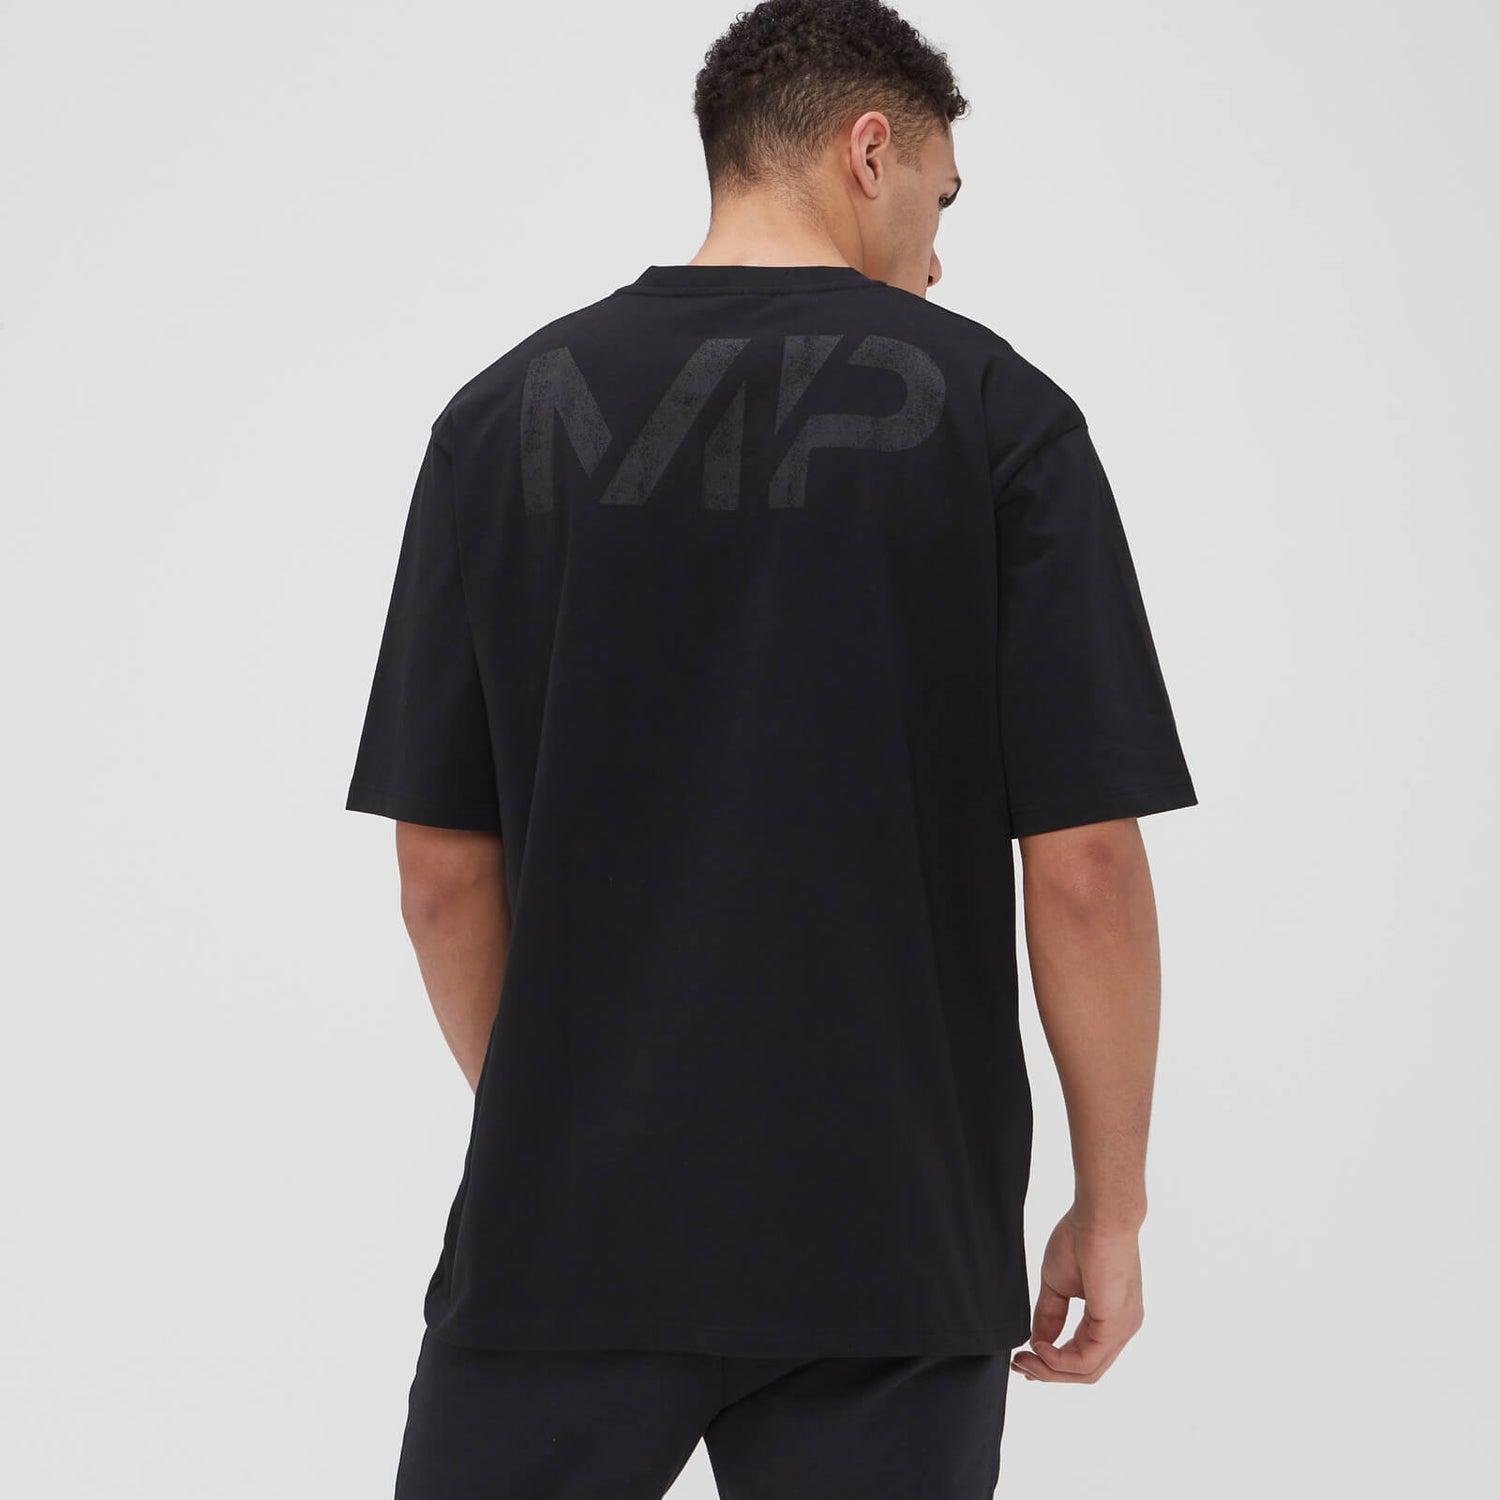 MP Adapt T-shirt met Grit-print voor heren - Zwart